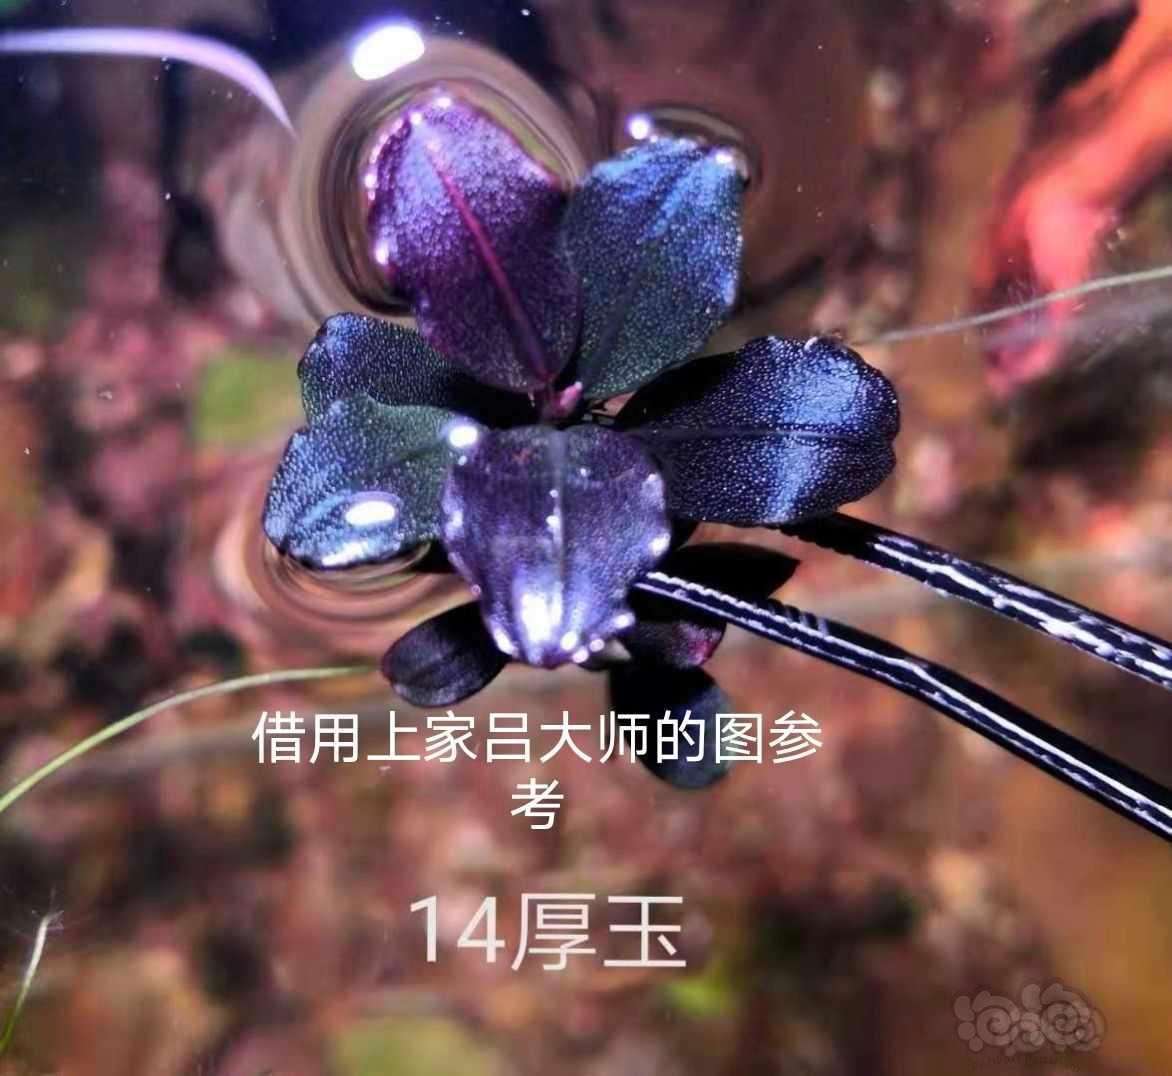 【辣椒榕】数码海 14厚玉-图9